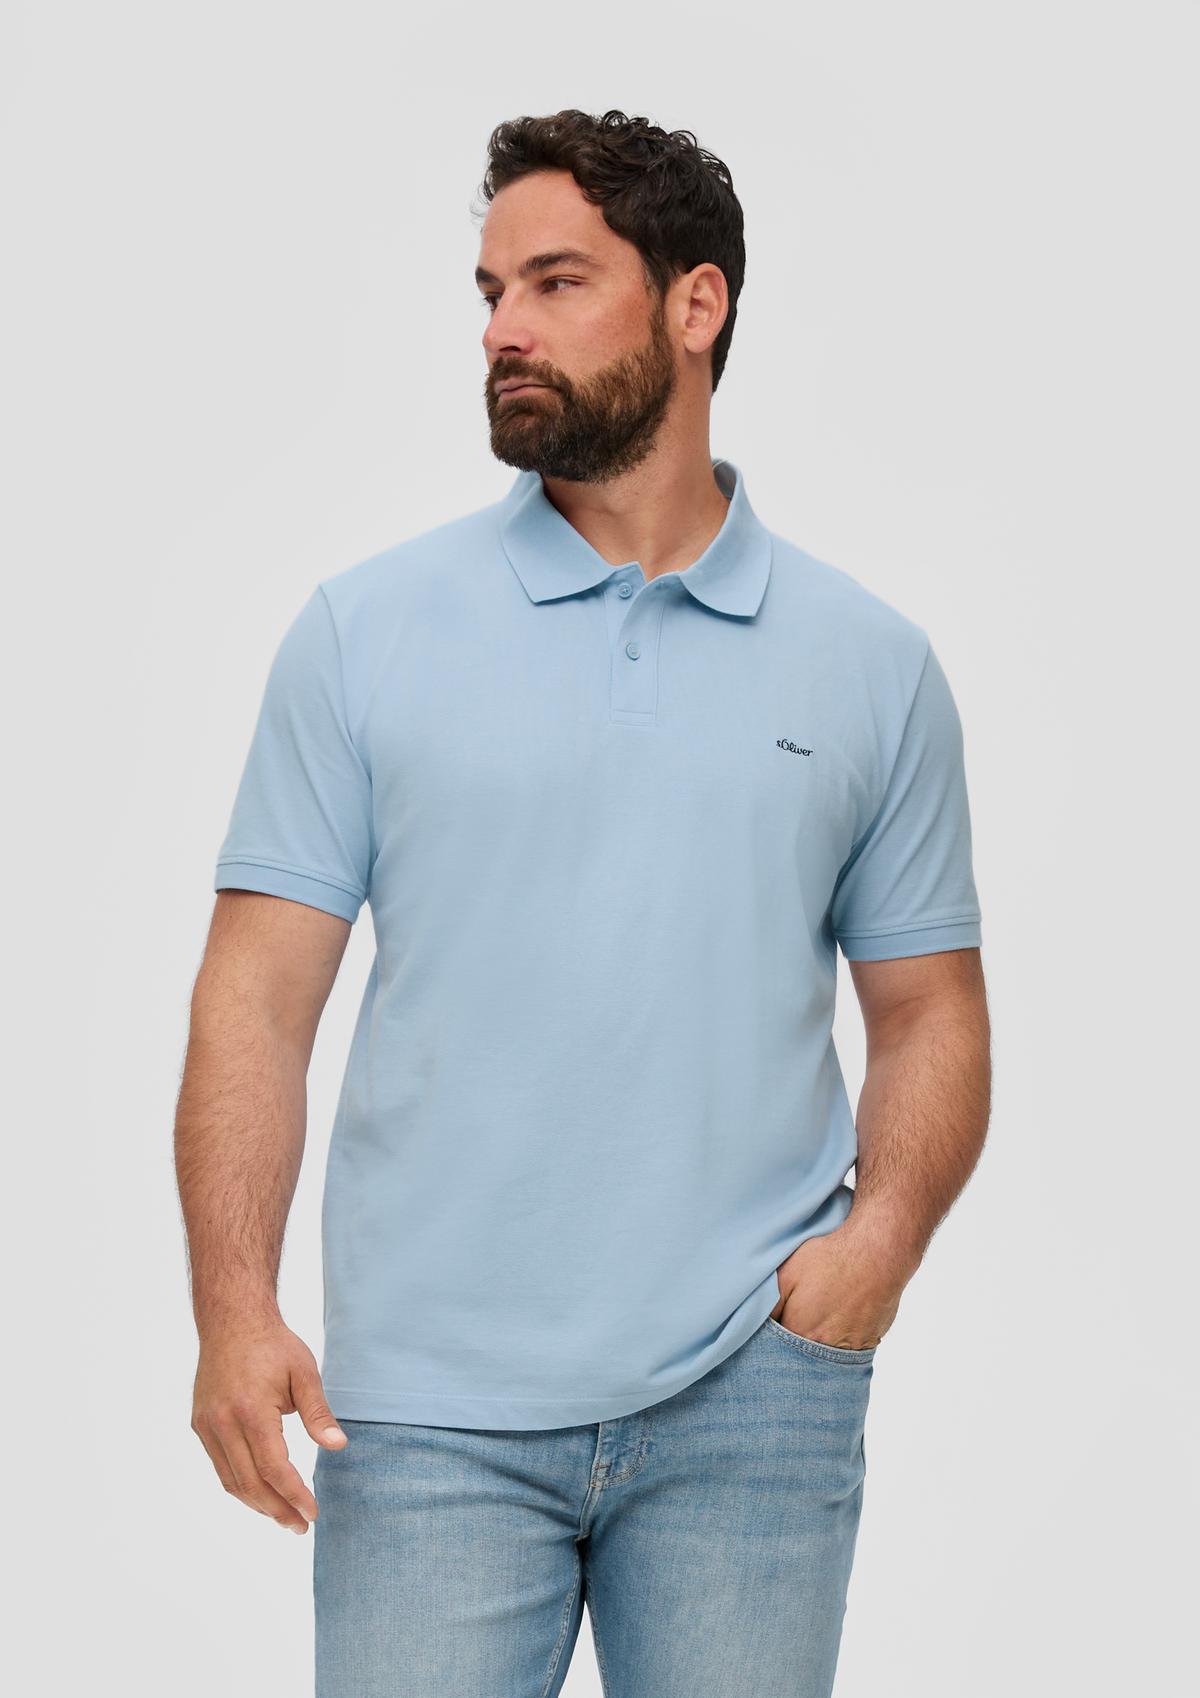 Polo shirt with a piqué texture